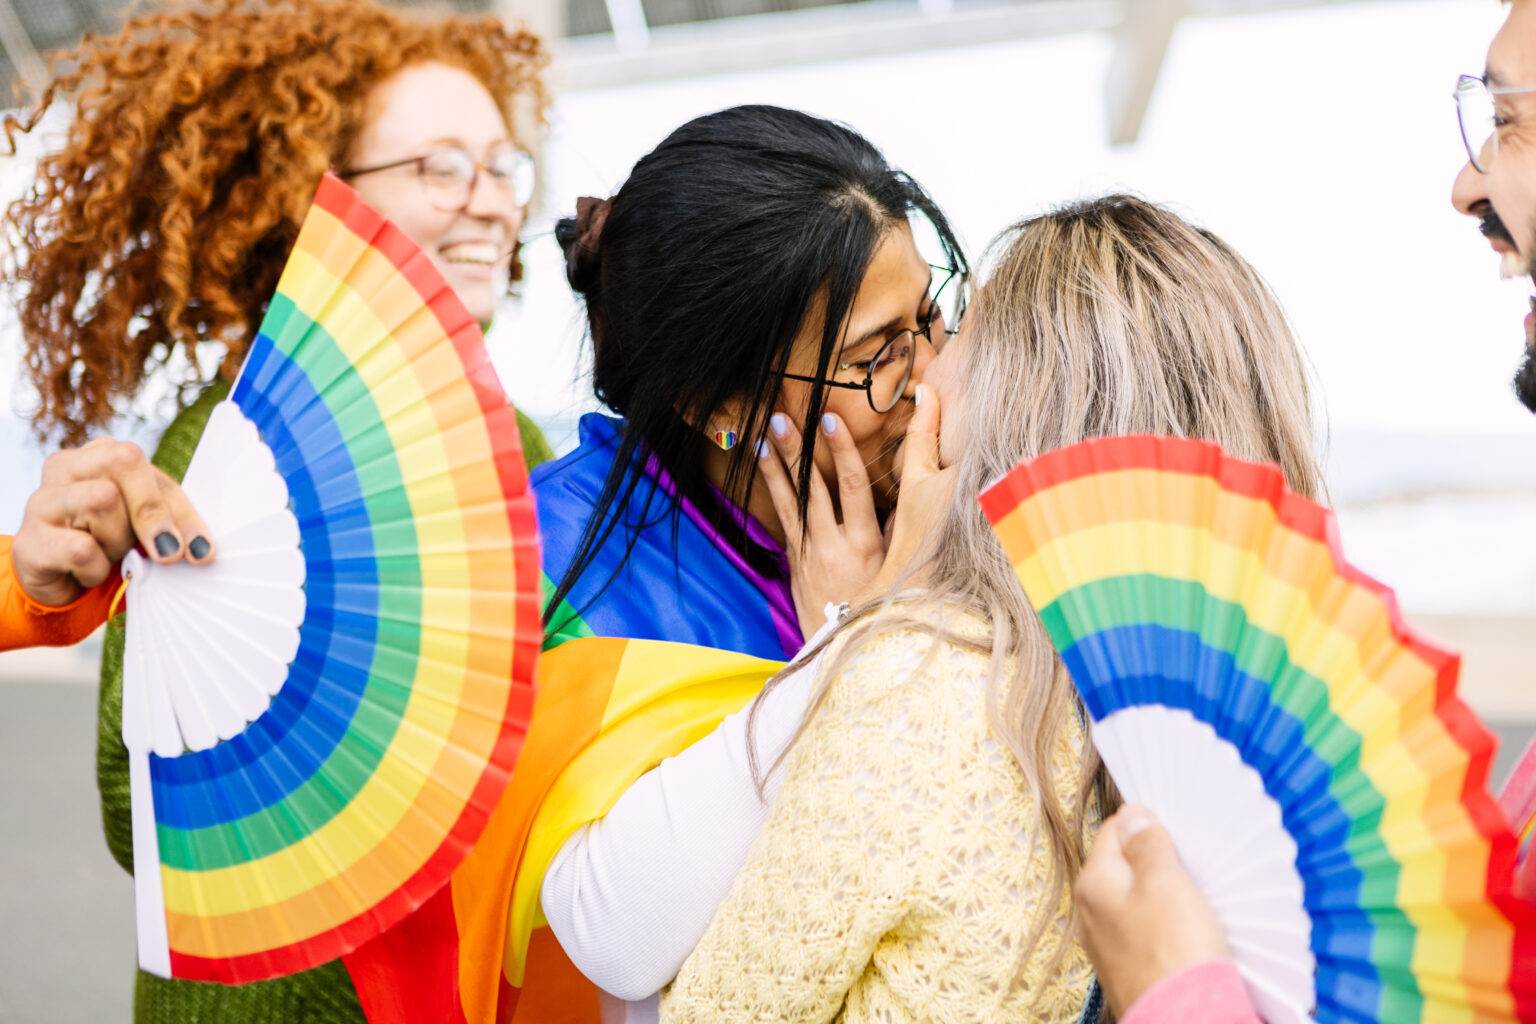 Fächer in bunten Regenbogenfarben die drei Frau halten. Zwei Frauen küssen sich